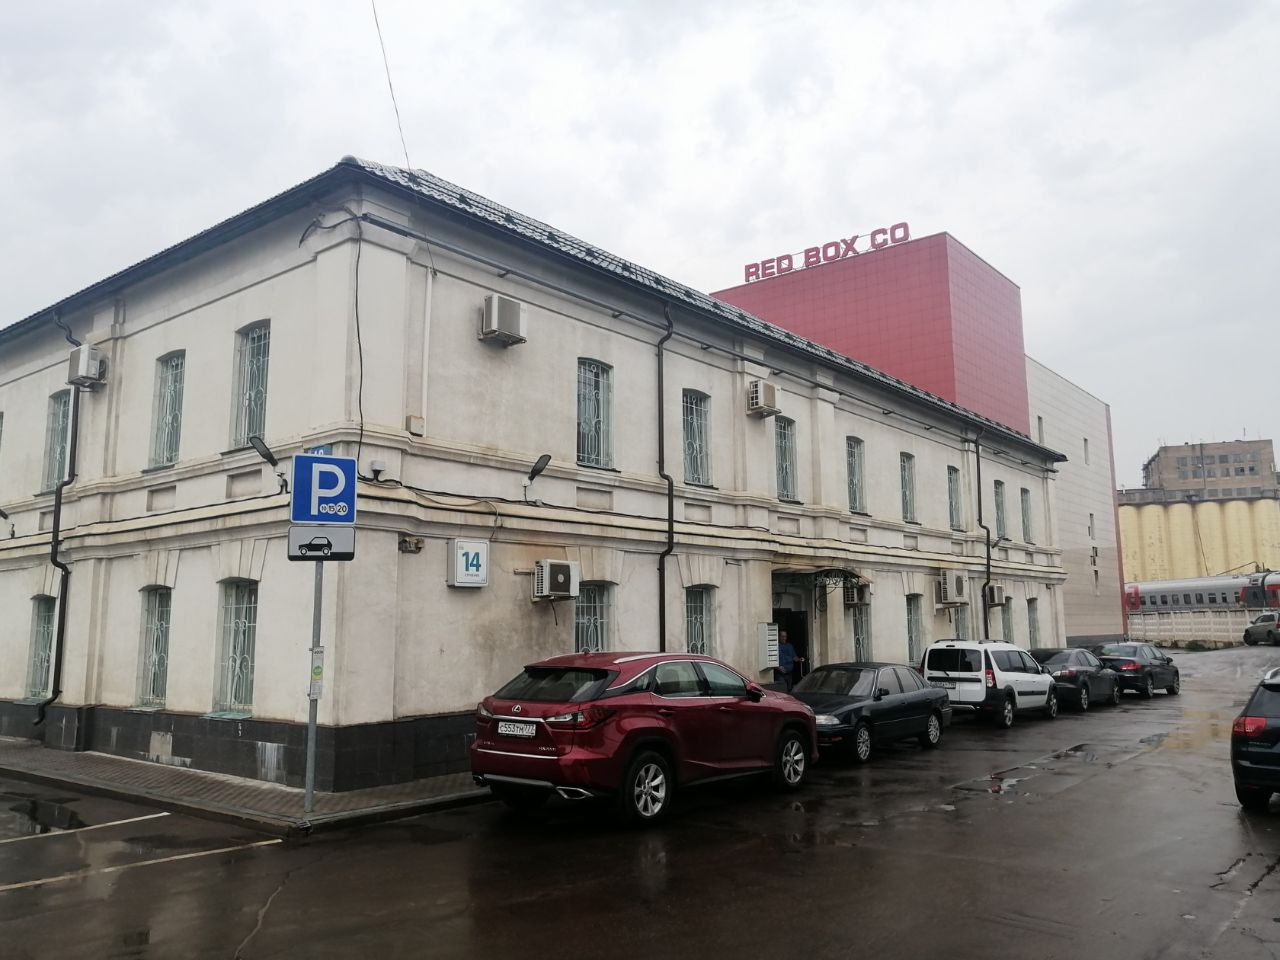 Бизнес Центр в Леснорядском переулке, 18с1 (Строение 14)